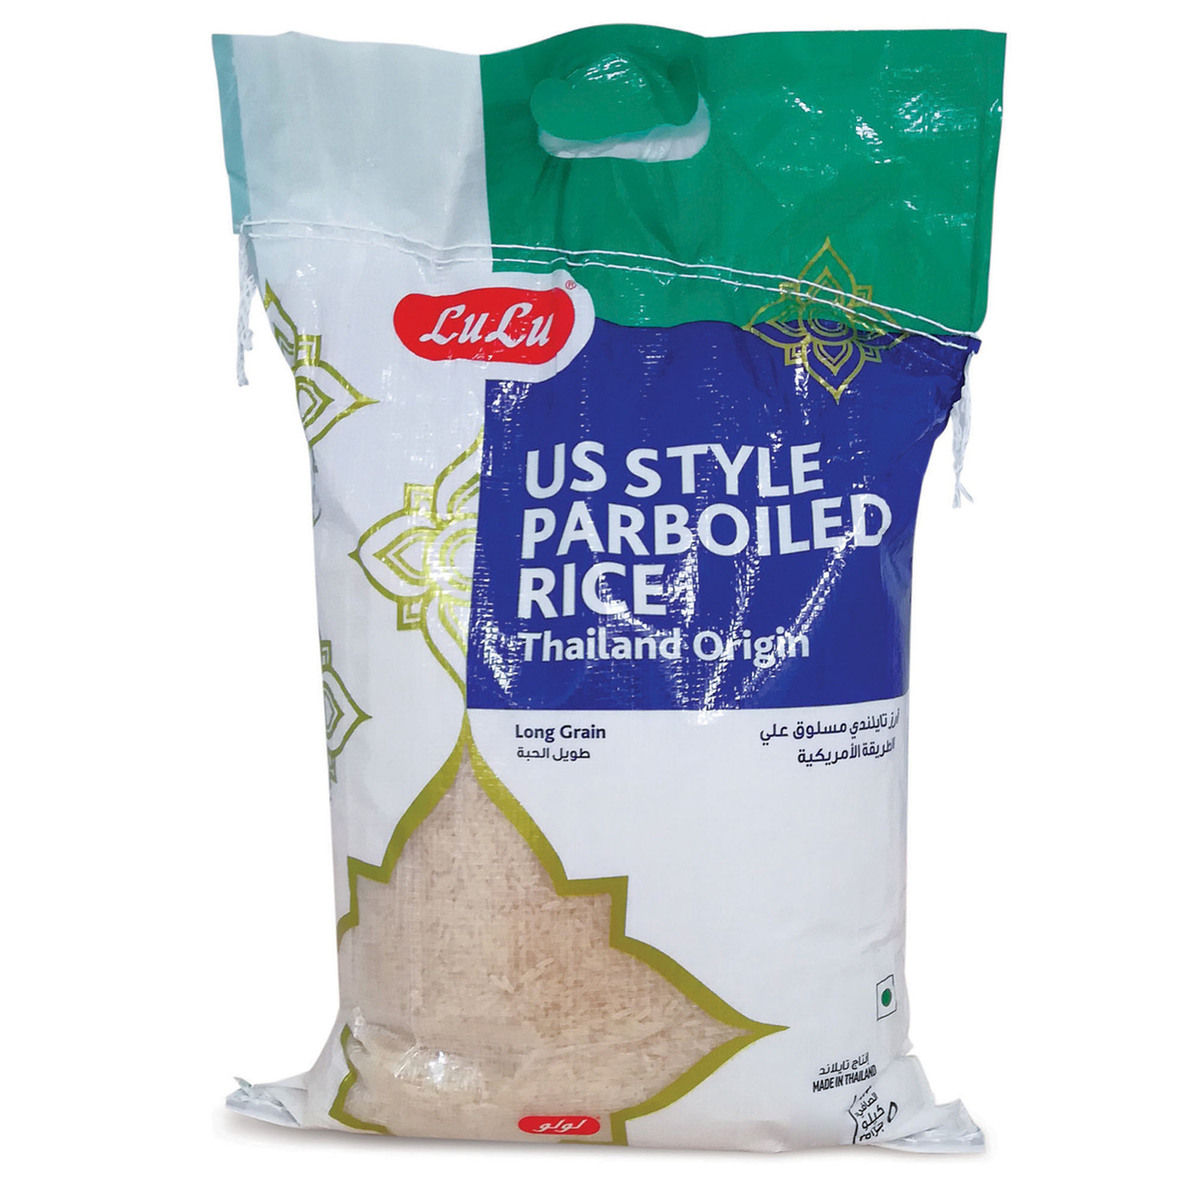 Lulu Thai Parboiled Us Style Rice 10kg